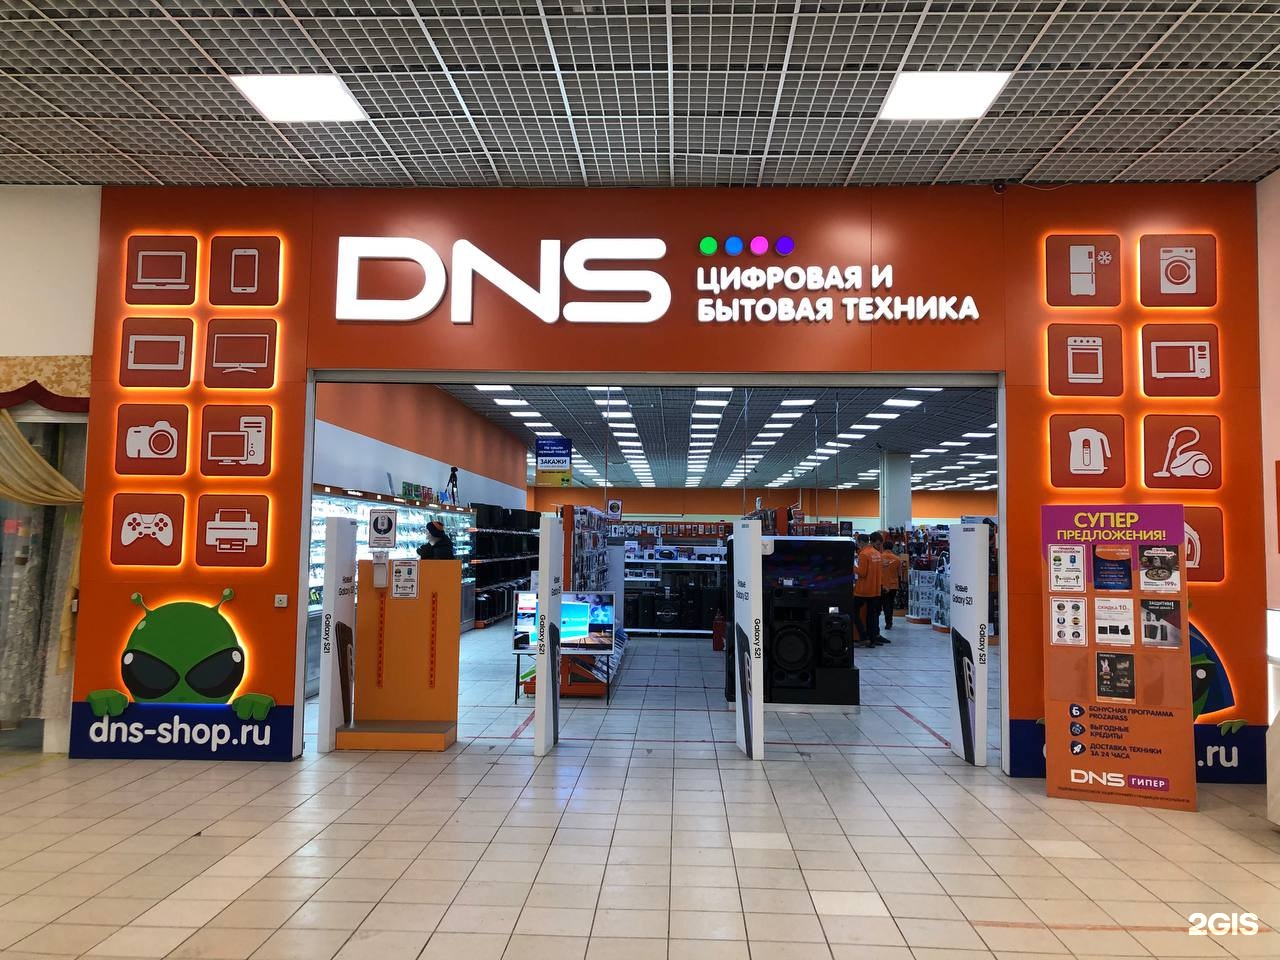 Телевизоры в днс уфа. Сервисный центр ДНС Чита Анохина 91. DNS Уфа. Компьютерный центр "DNS". ДНС компьютер центр.